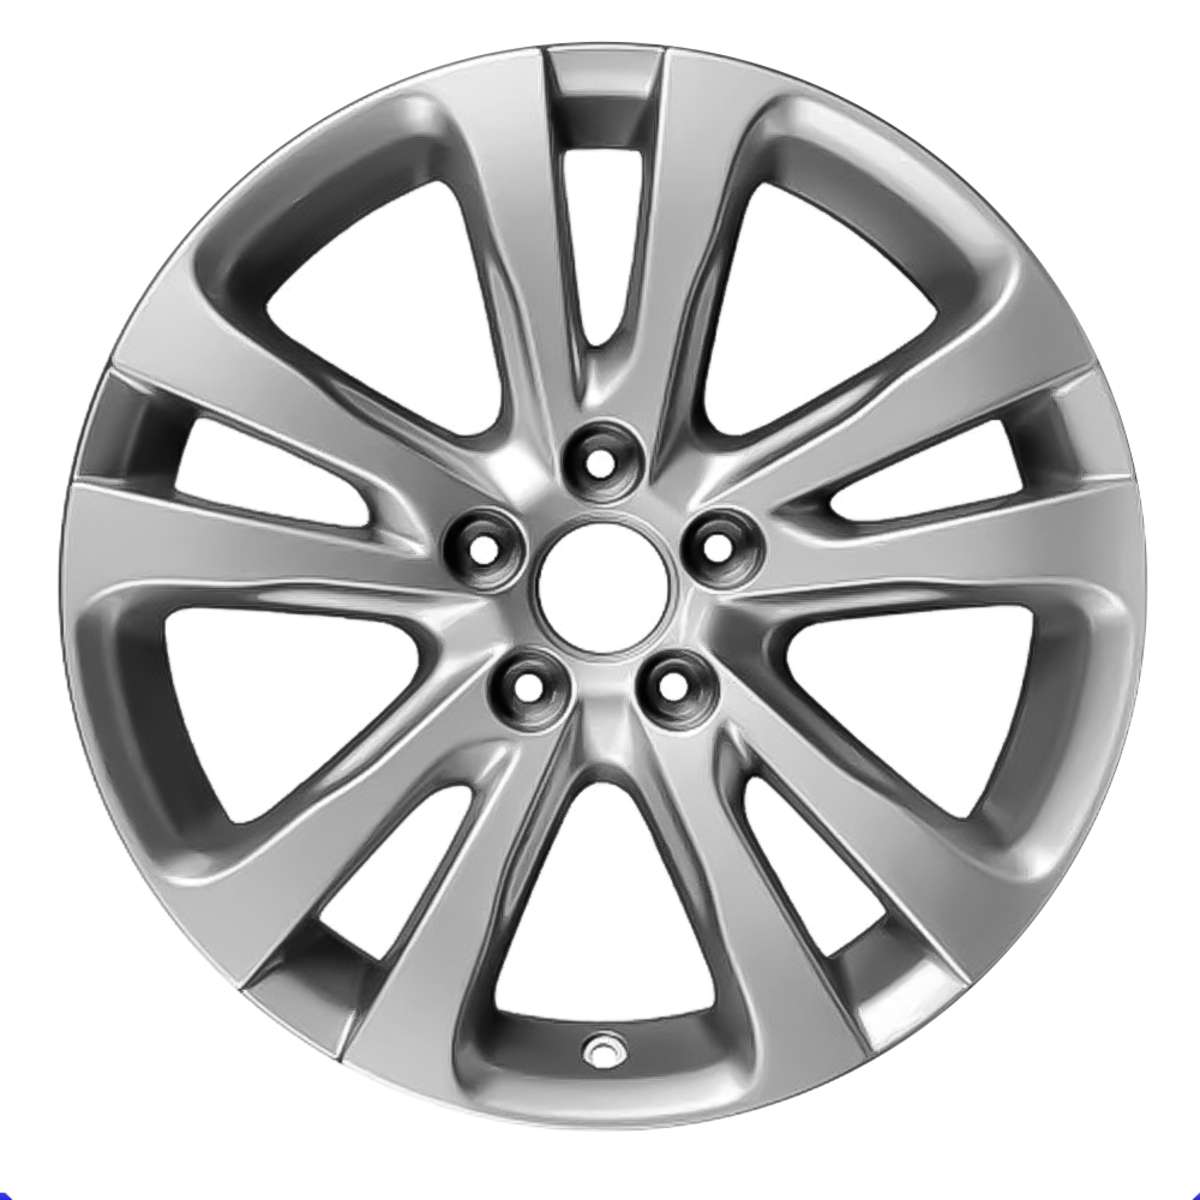 2017 Chrysler 200 17" OEM Wheel Rim W2511S